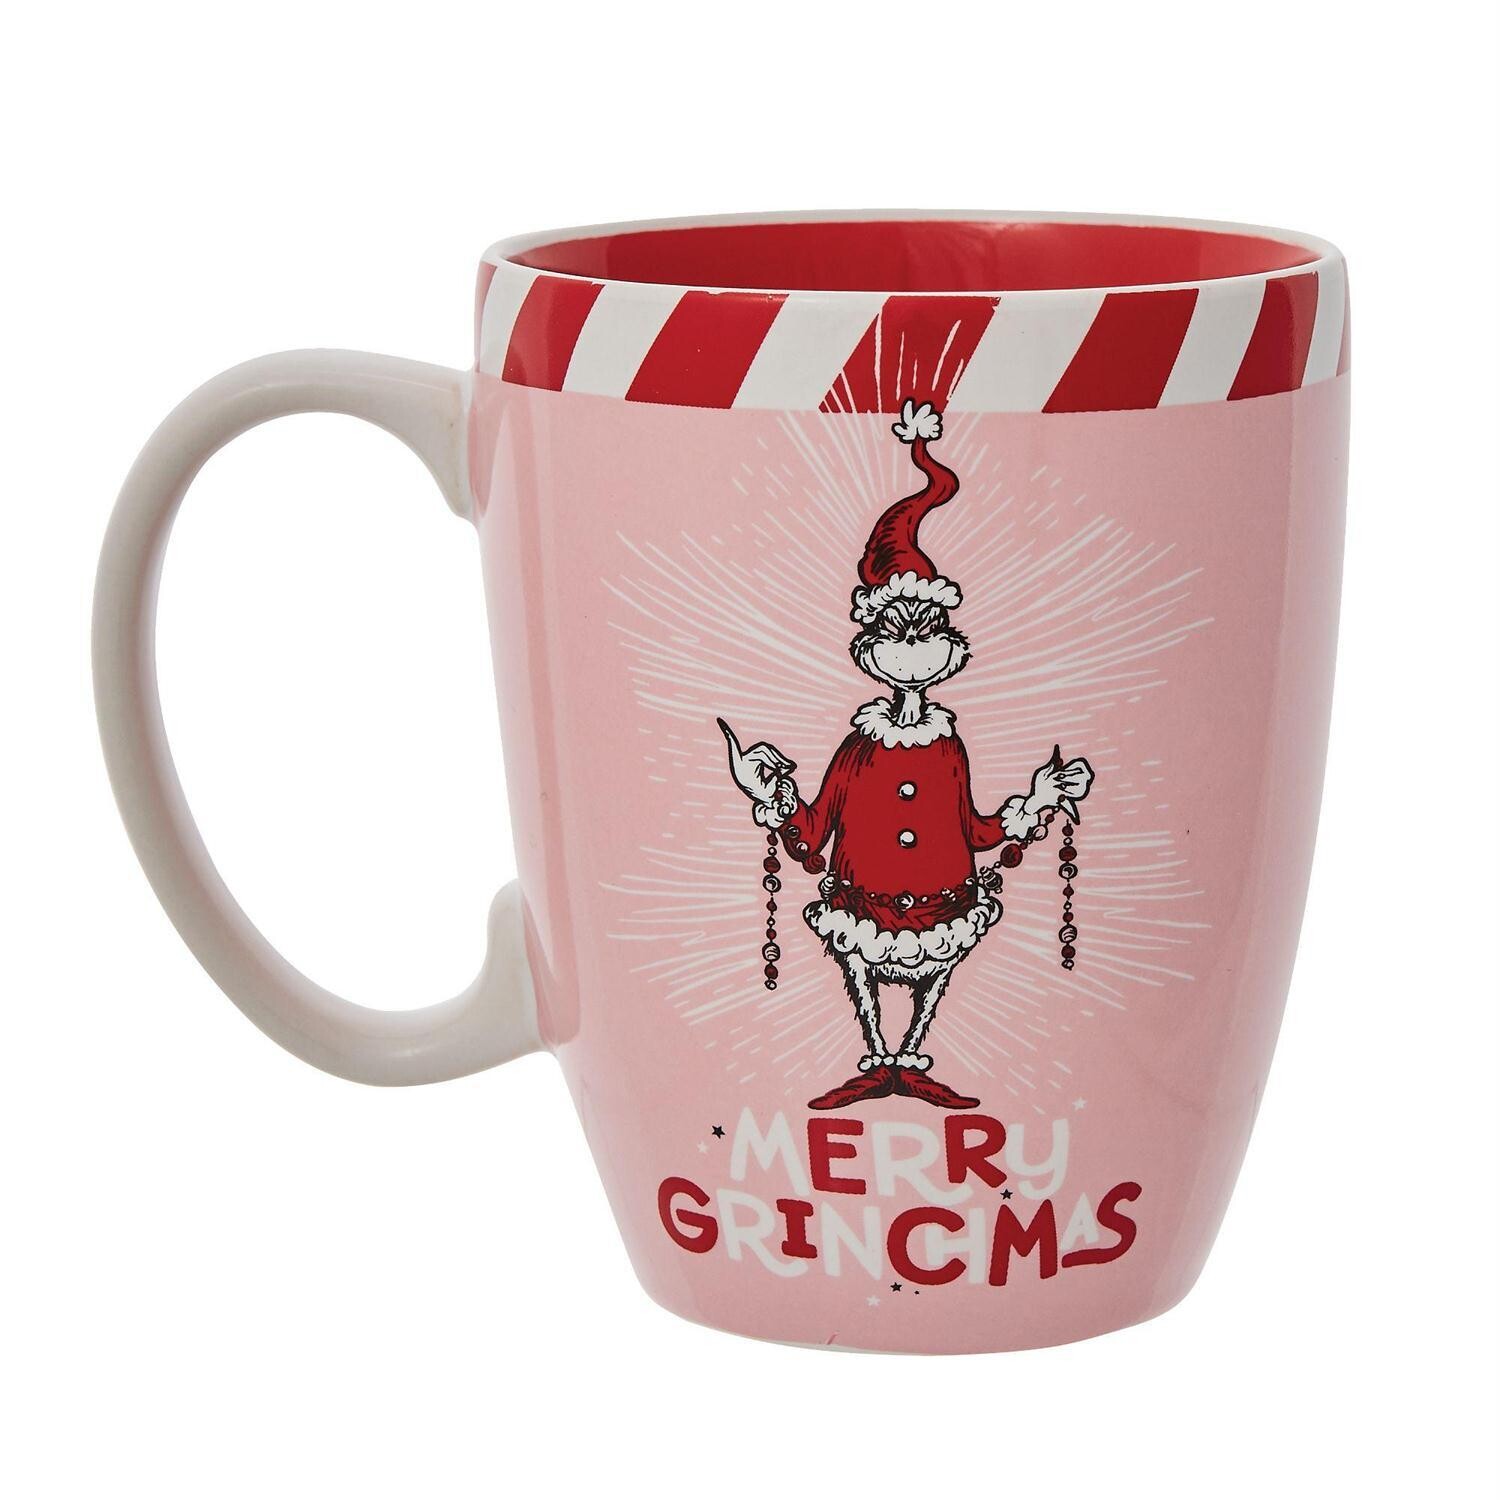 Grinch Pink Merry Grinchmas Mug